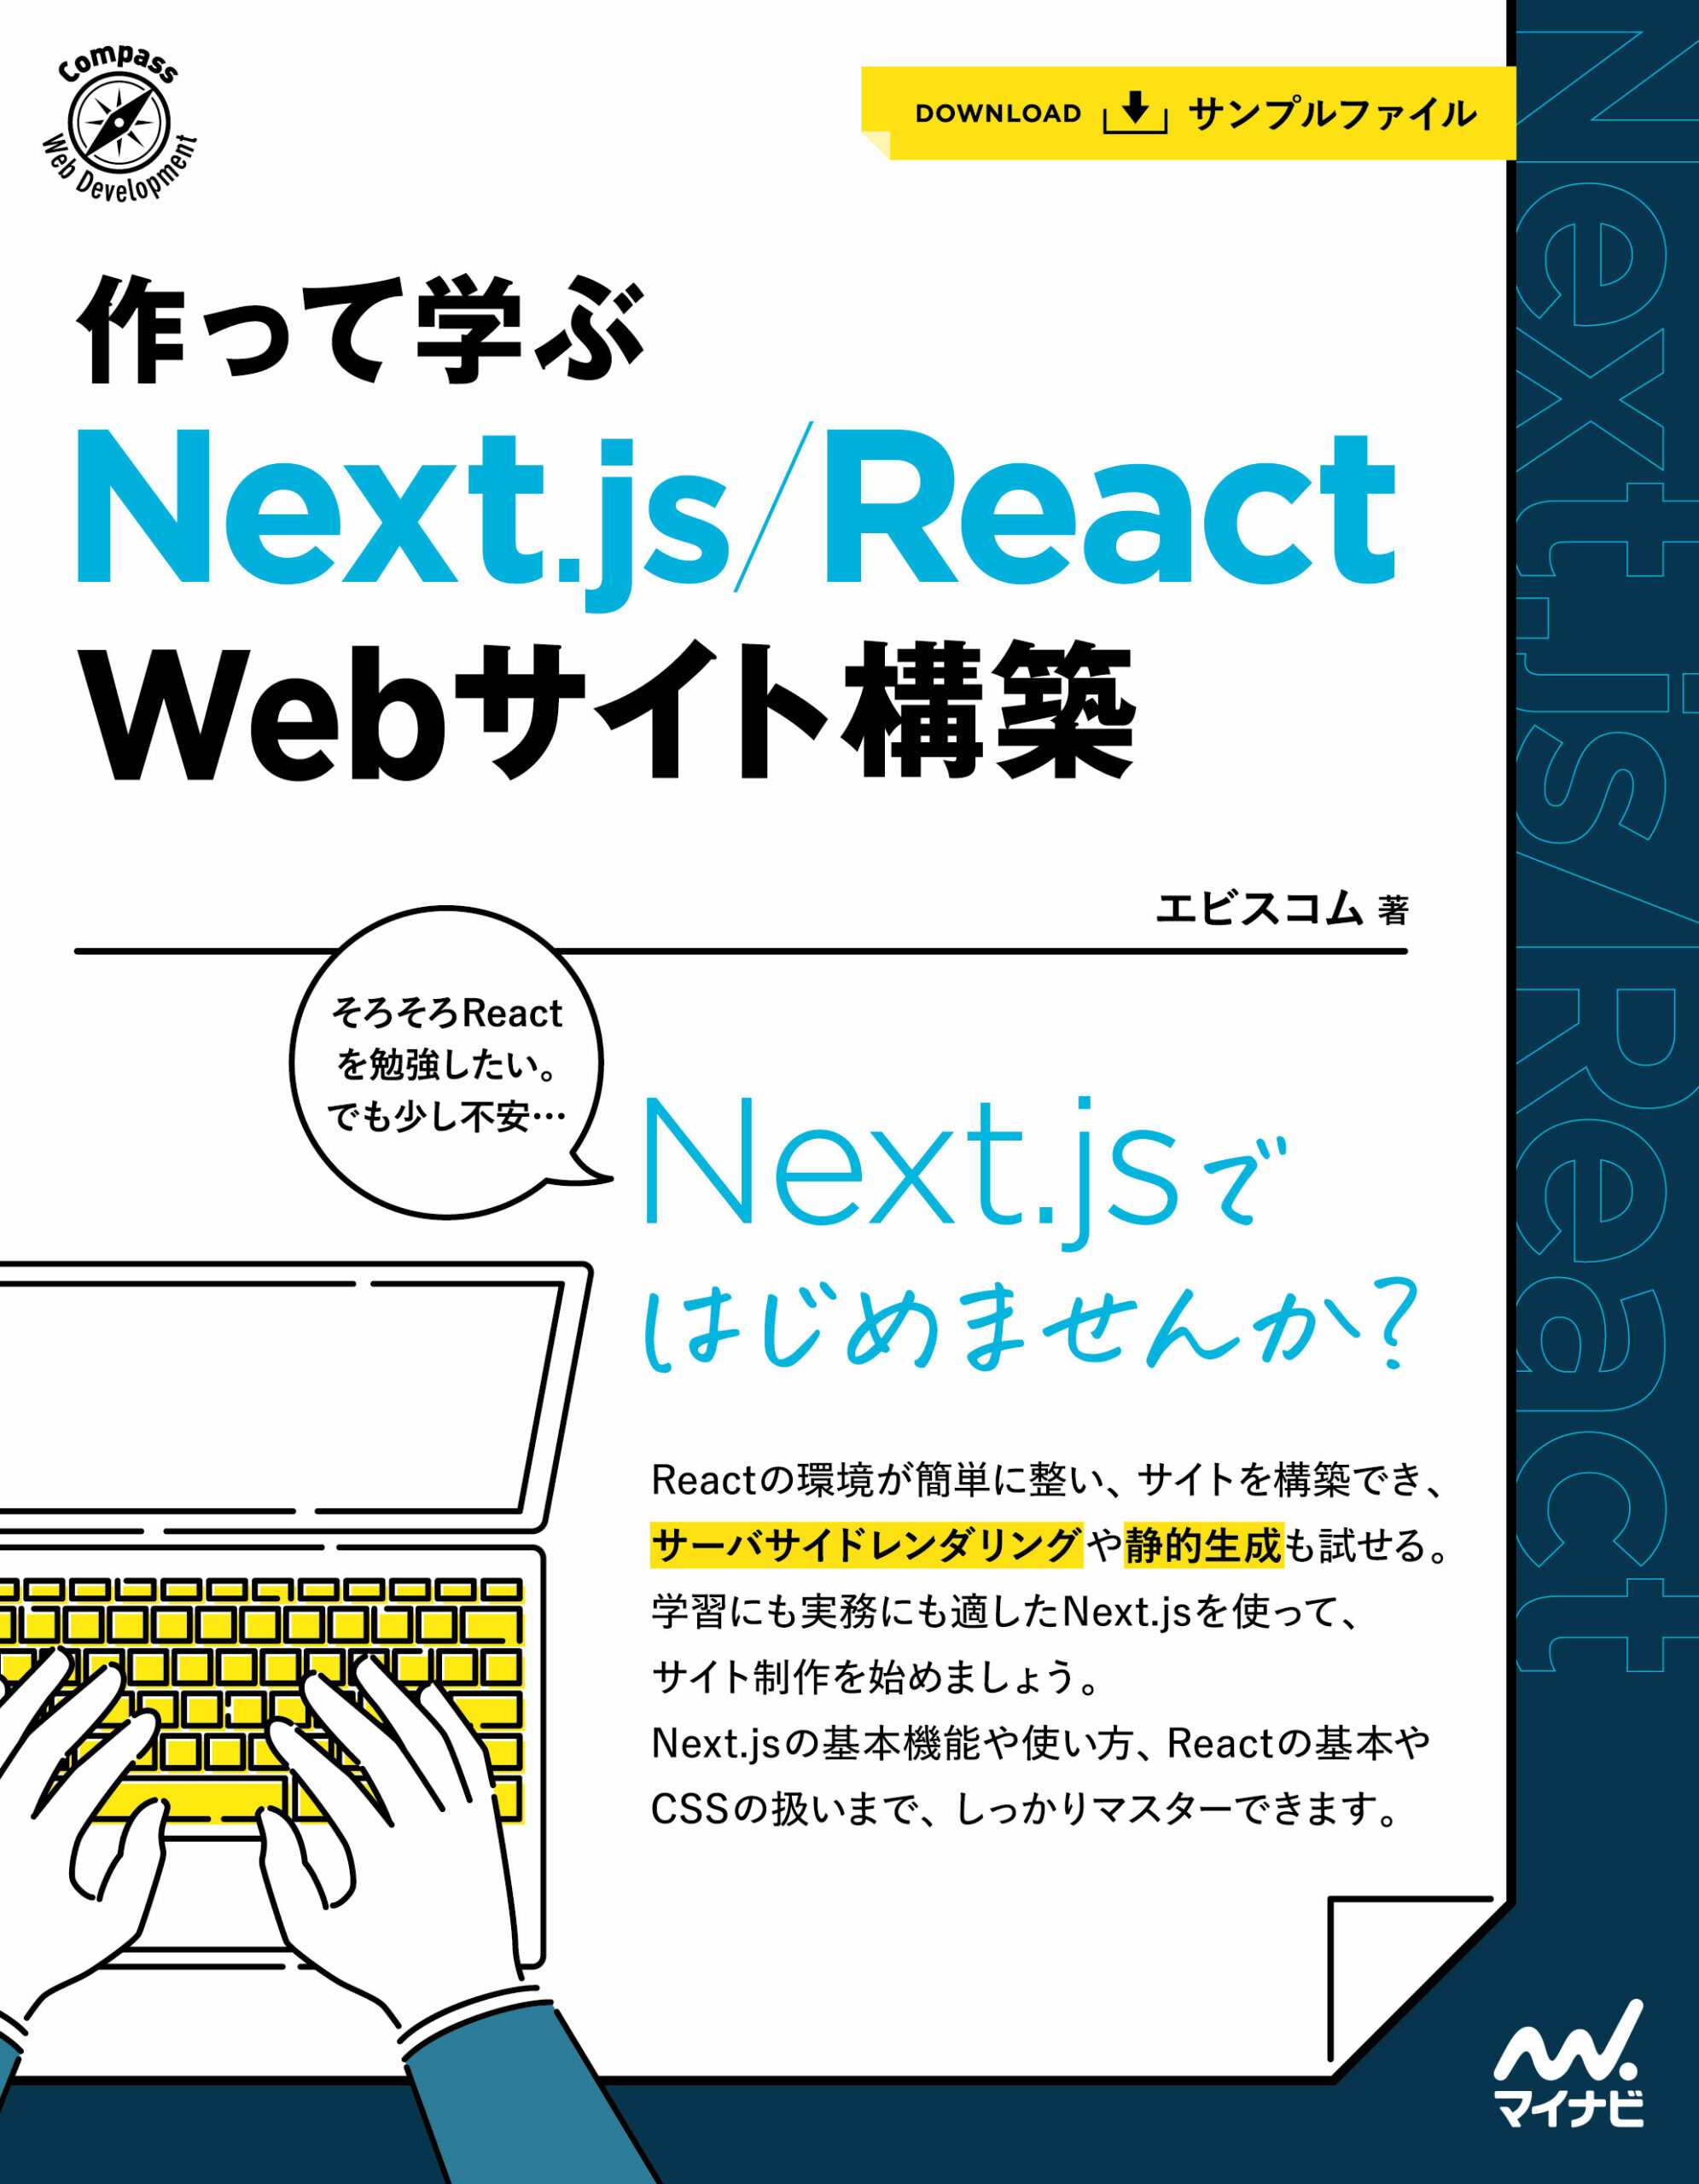 作って学ぶ Next.js/React Webサイト構築